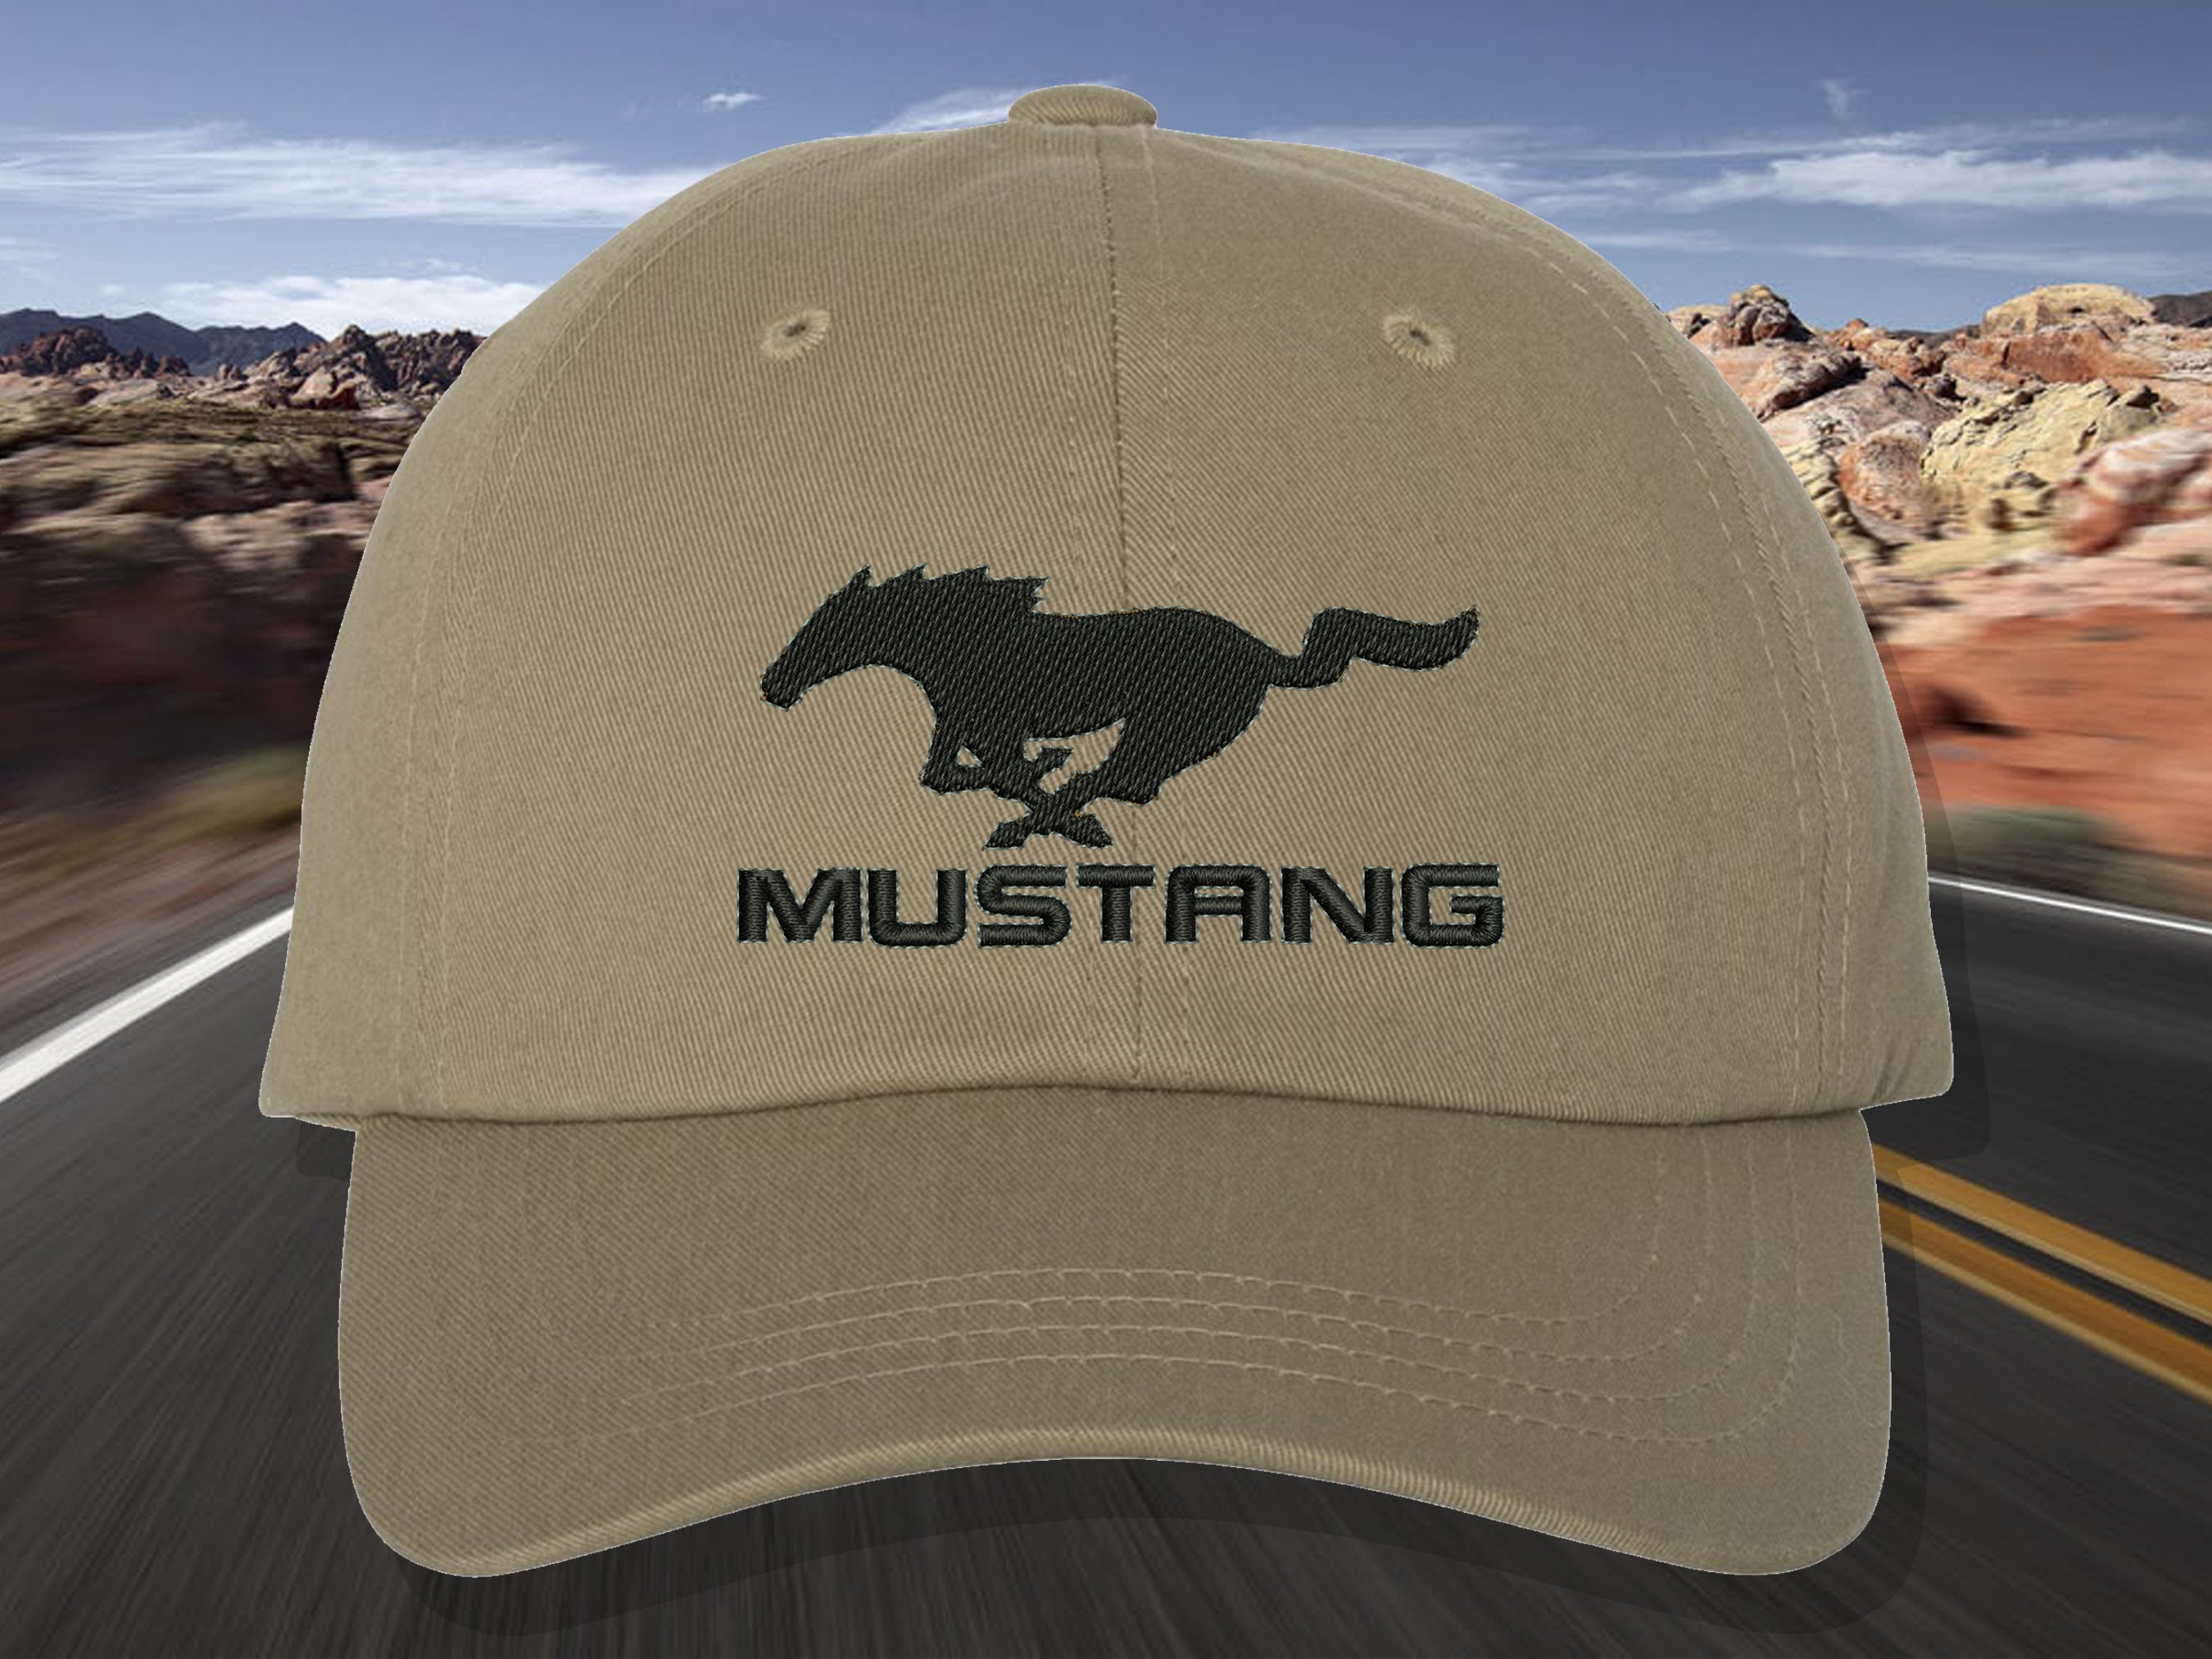 Mustang baseball cap